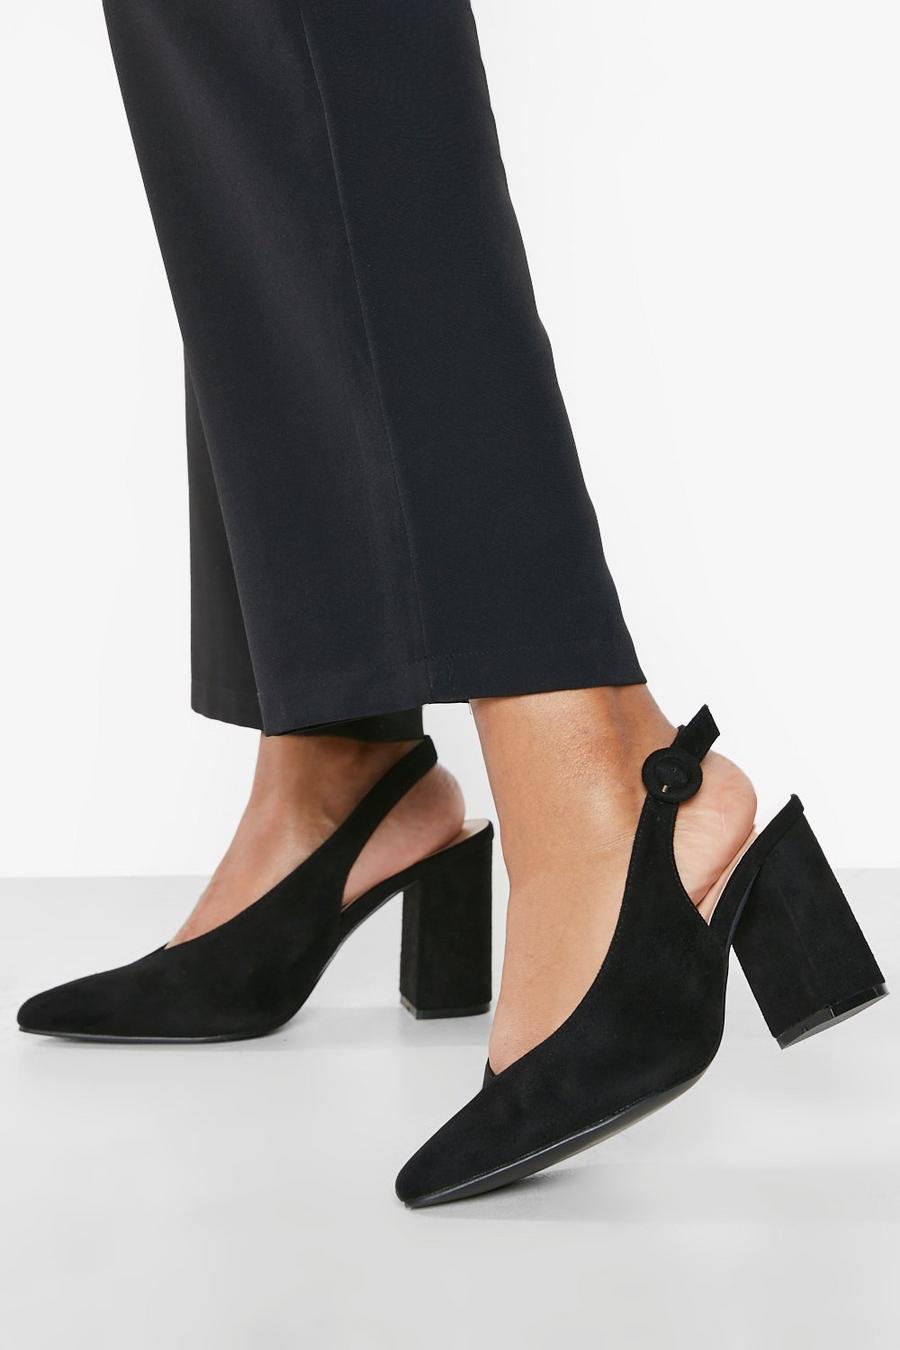 Zapatos de salón de holgura ancha con puntera de pico  sin talón, Black negro